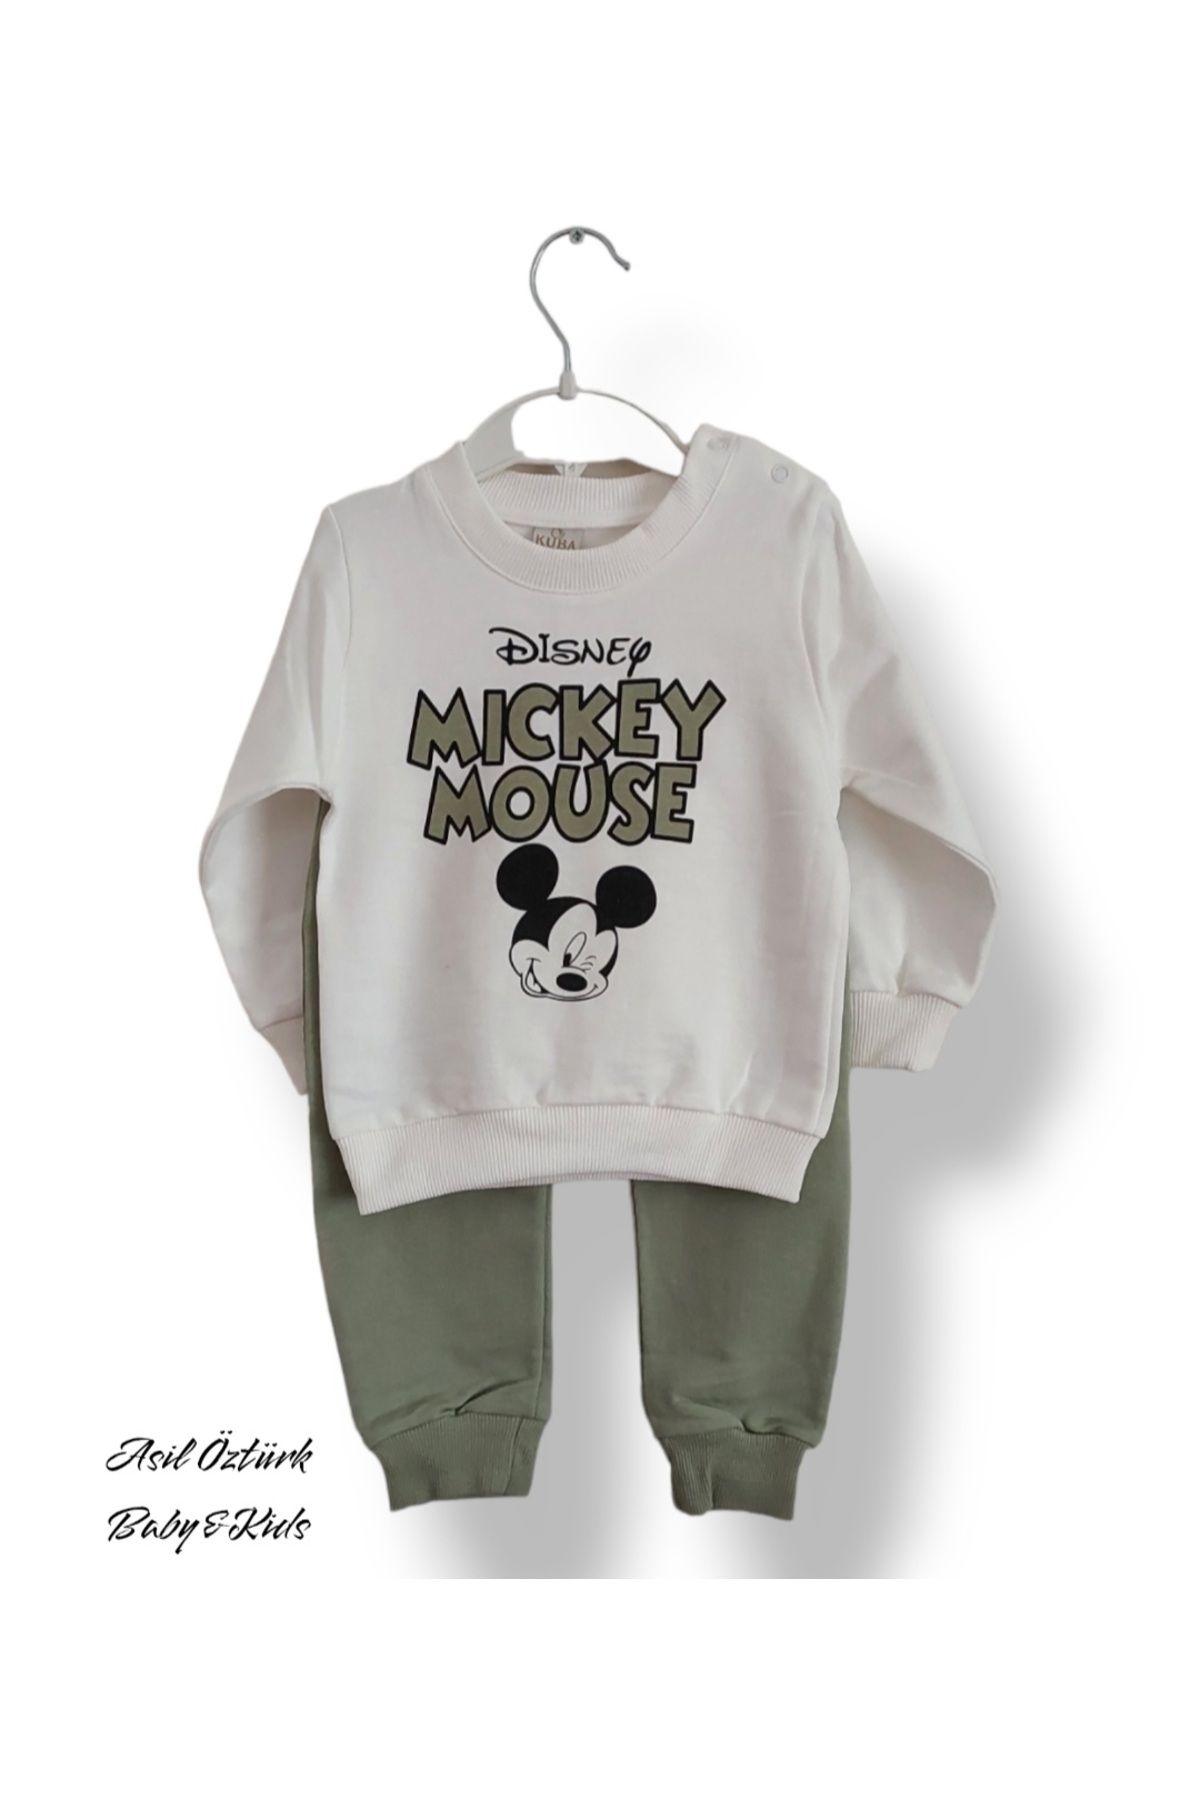 ASİL ÖZTÜRK BABY KİDS Kuba Kız Erkek Bebek Çocuk Unisex Alt Üst Takım Disney Mickey Mouse Model